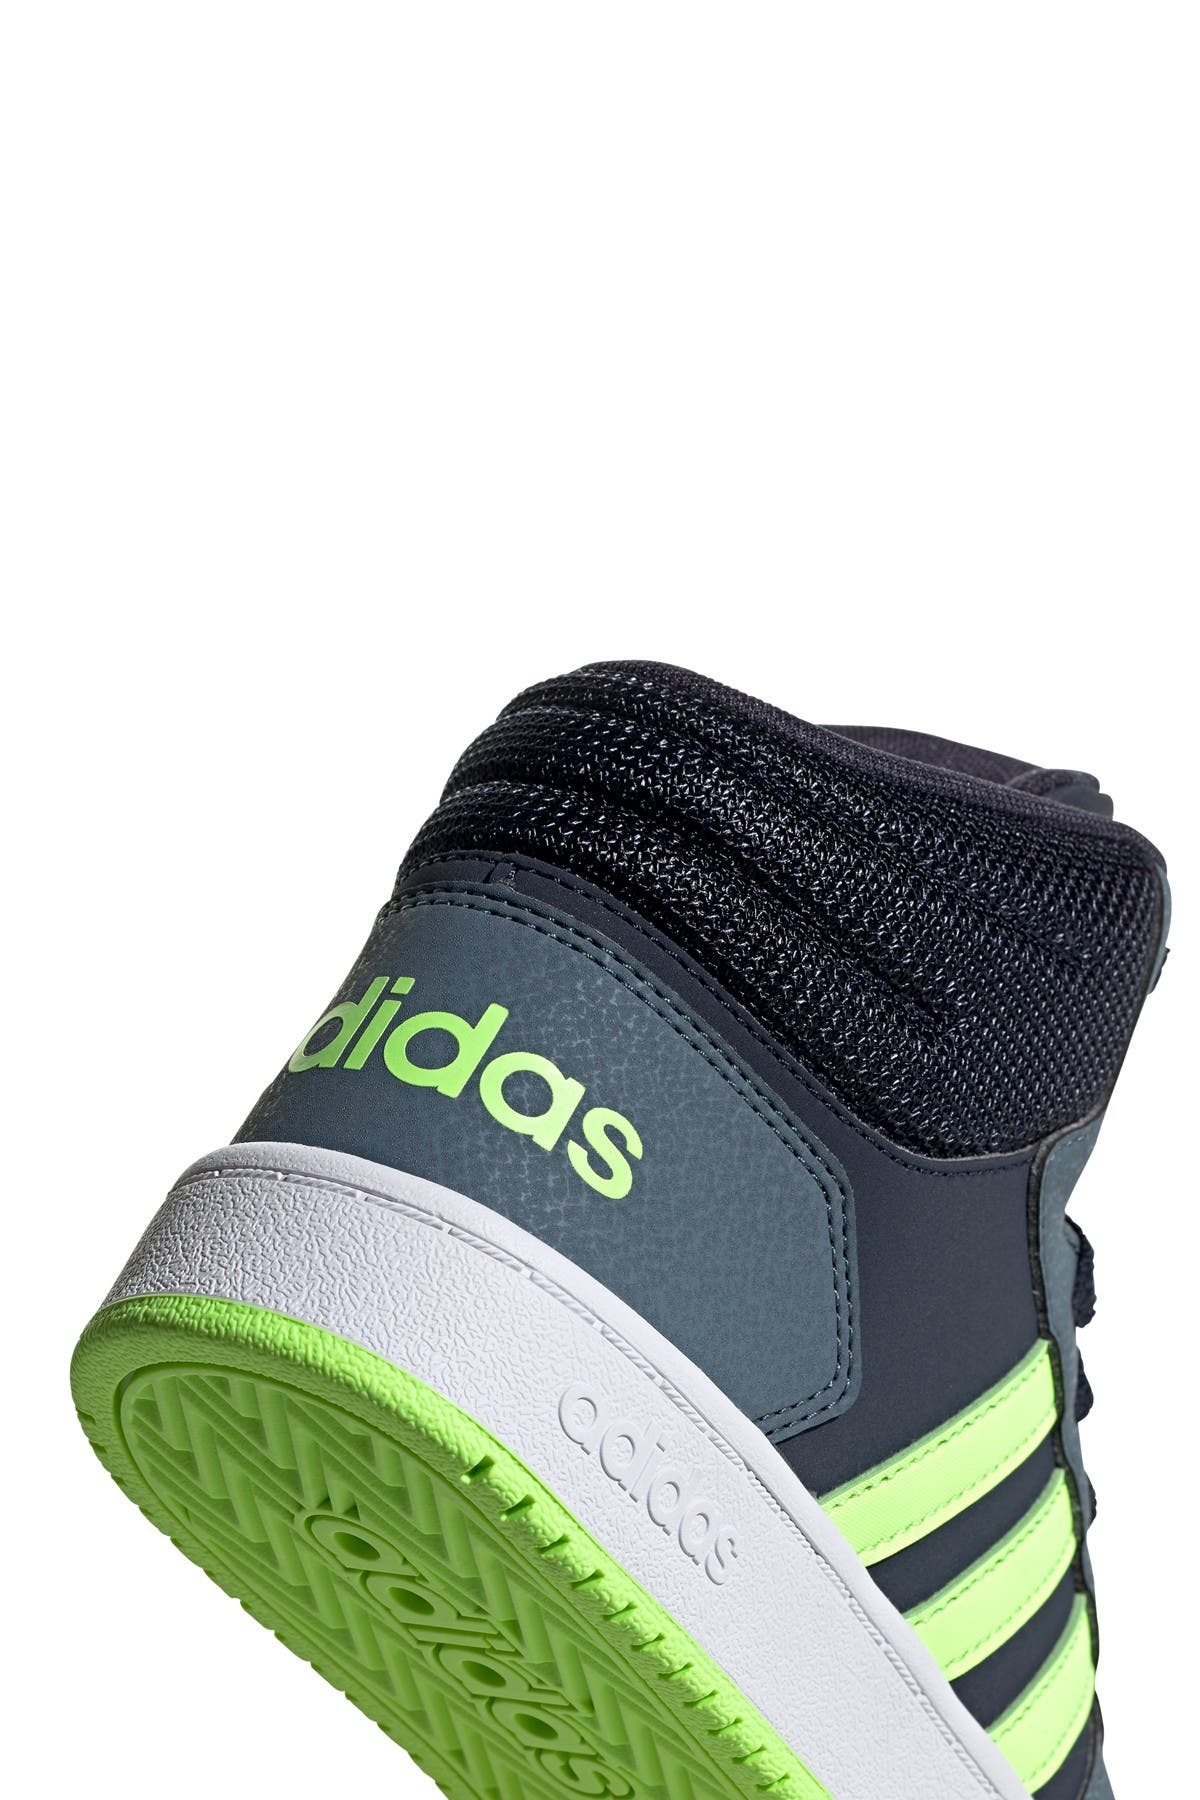 adidas hoops 2.0 on feet